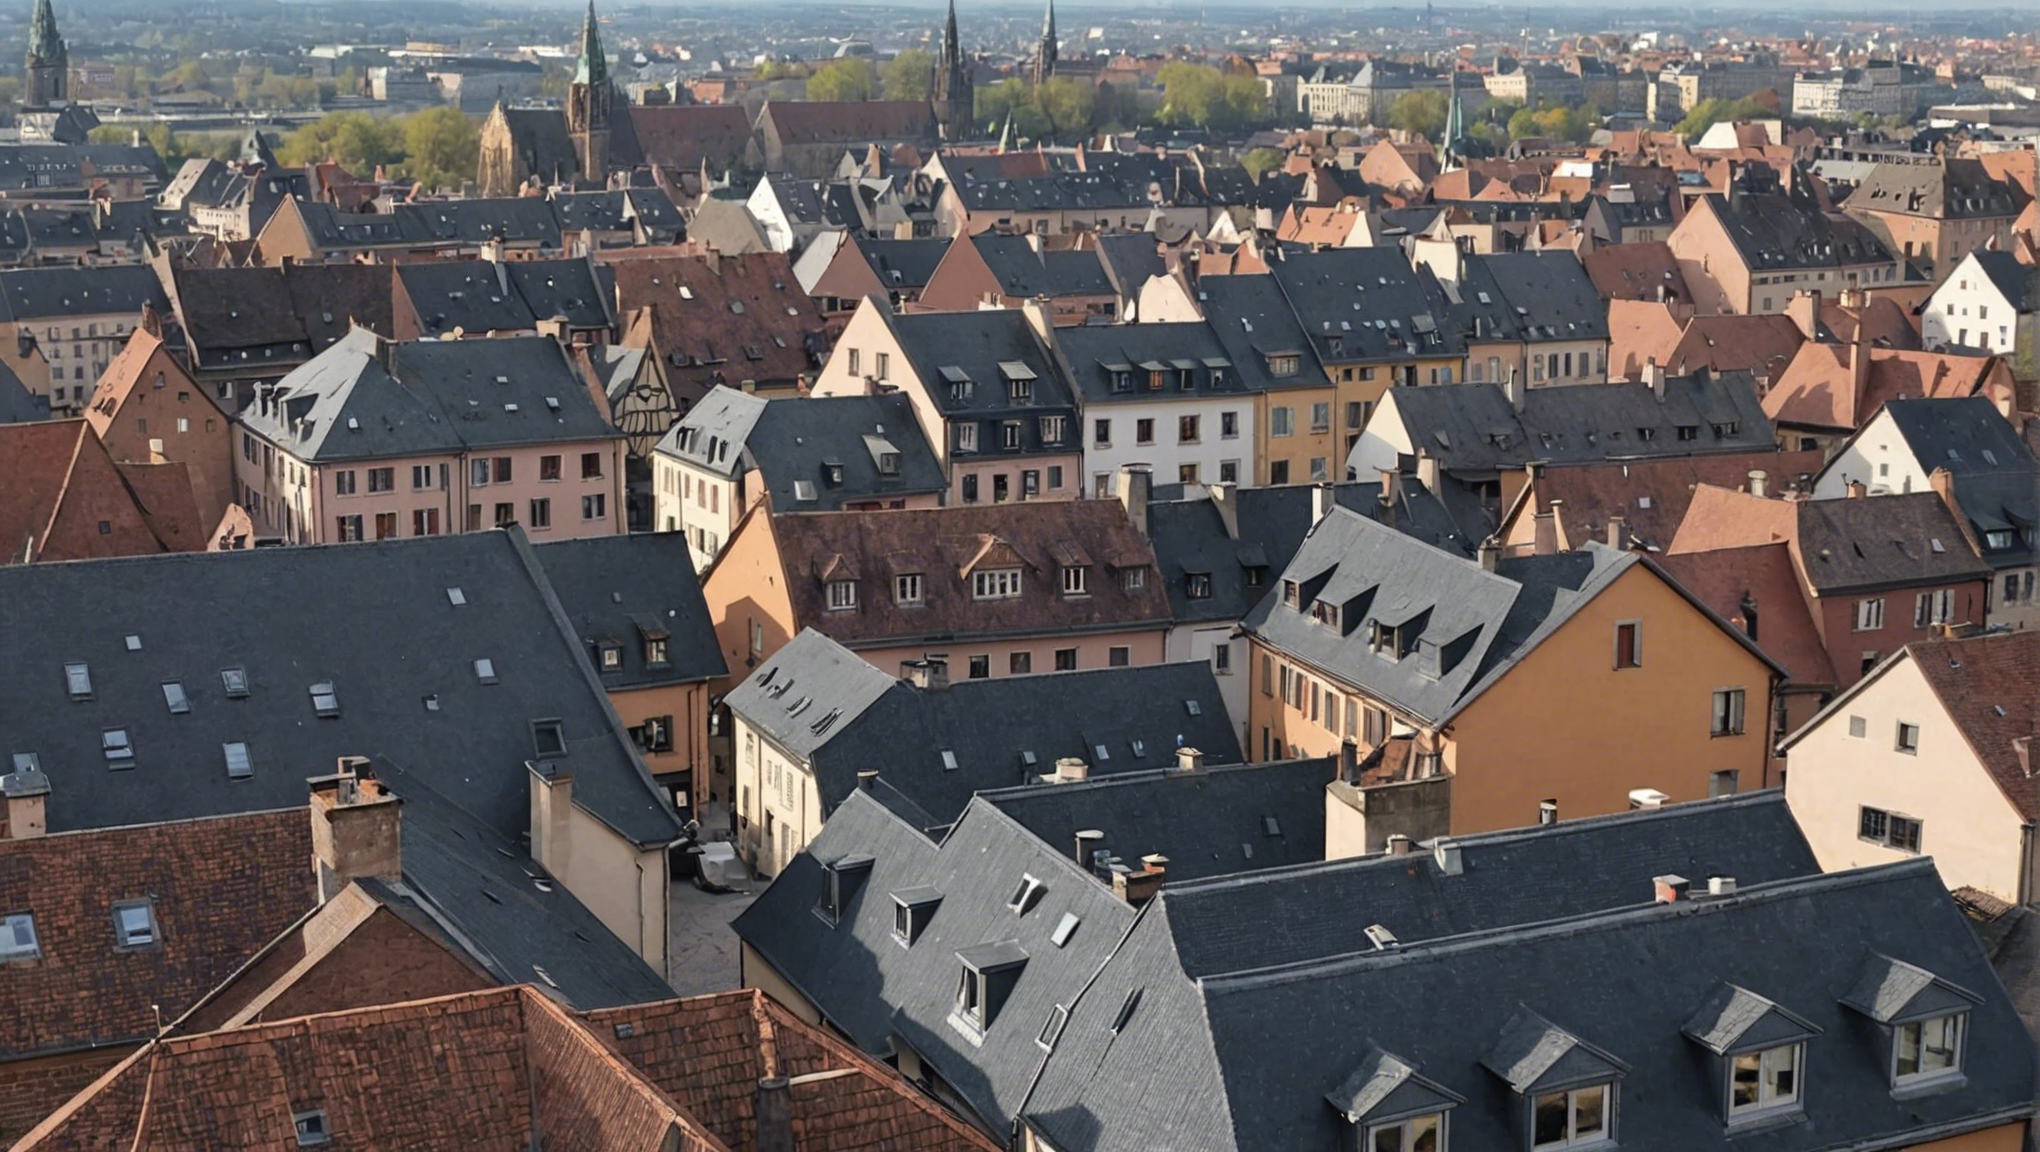 découvrez nos conseils pour améliorer l'isolation de votre toiture à strasbourg et profiter d'un meilleur confort thermique tout en réduisant vos factures énergétiques.